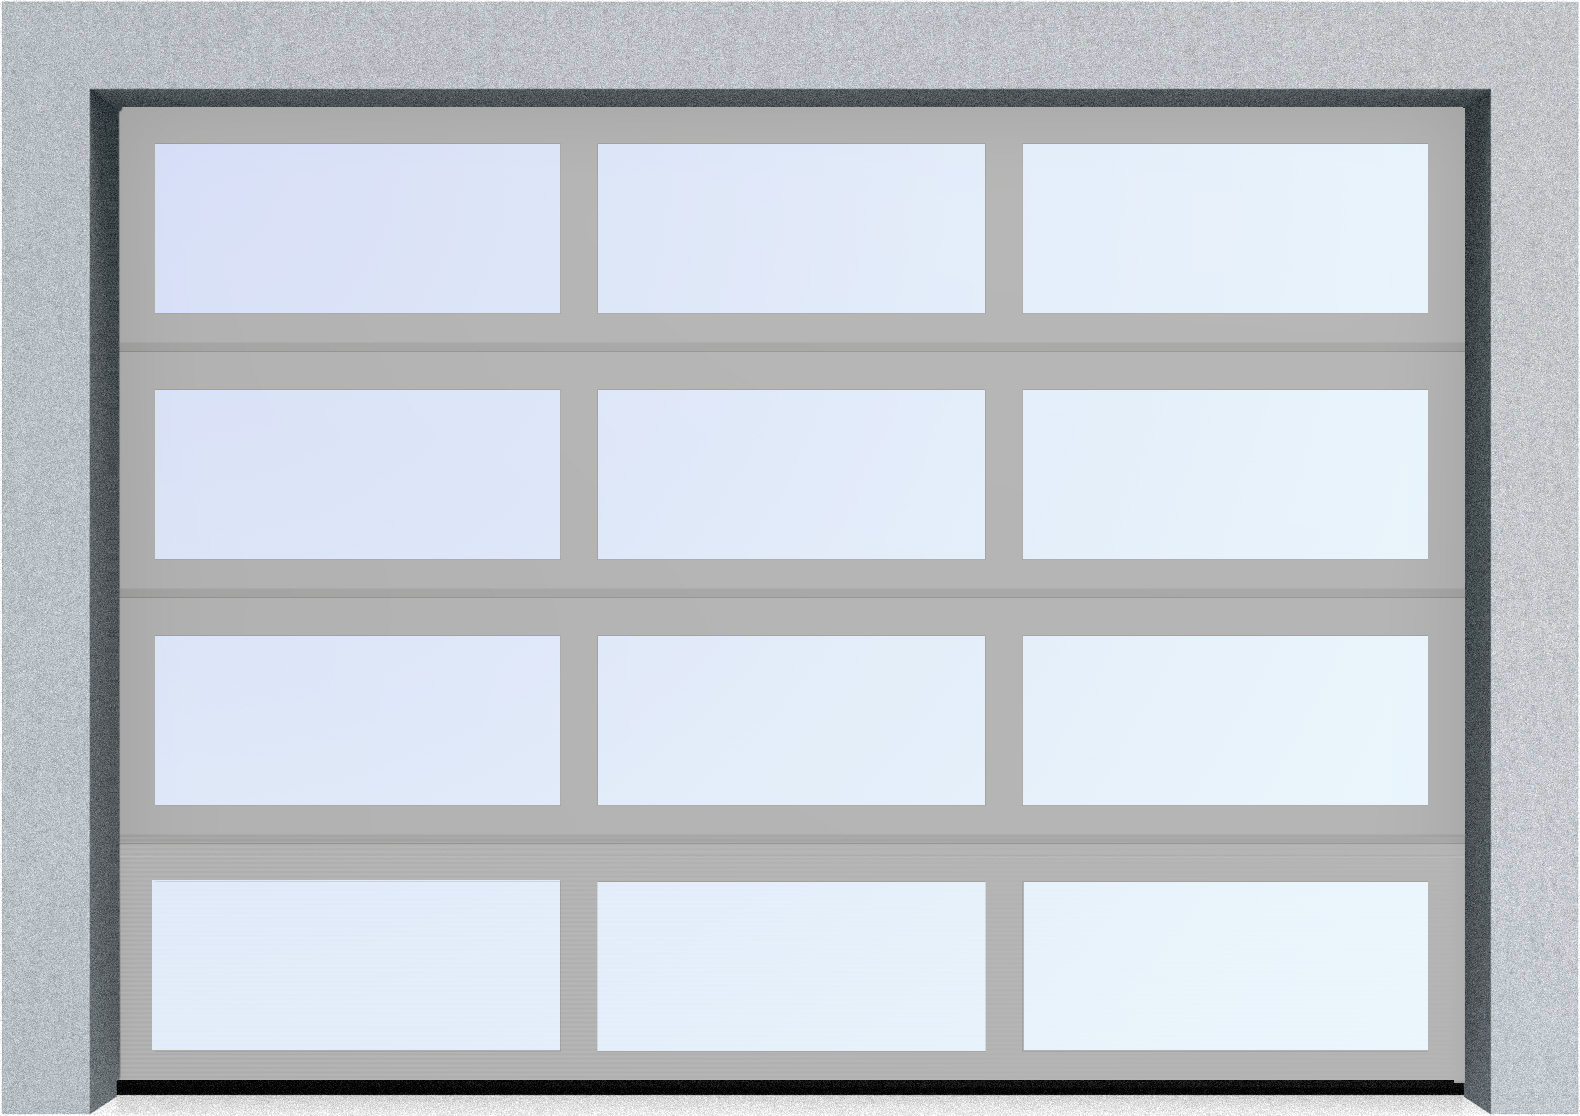  Секционные панорамные ворота серии AluTrend (АЛП) 5000х4500 нижняя панель стандартные цвета, фото 9 